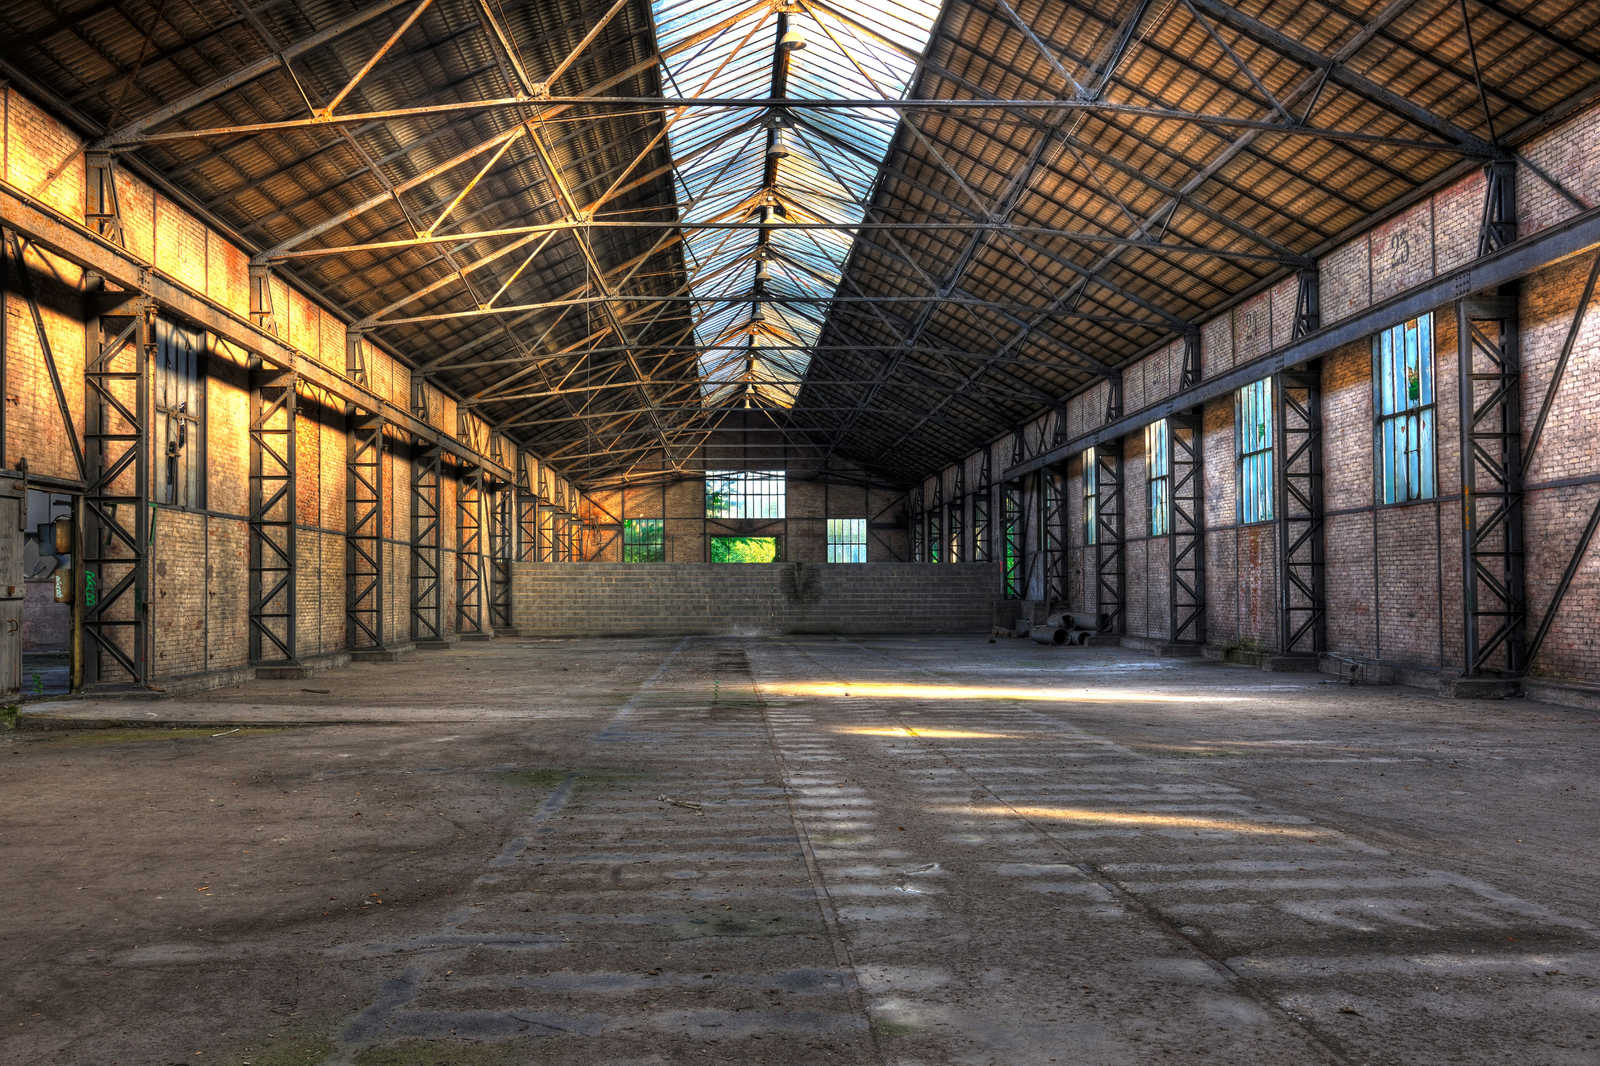             Leinwand mit verlassener Industriehalle mit 3D-Effekt – 0,90 m x 0,60 m
        